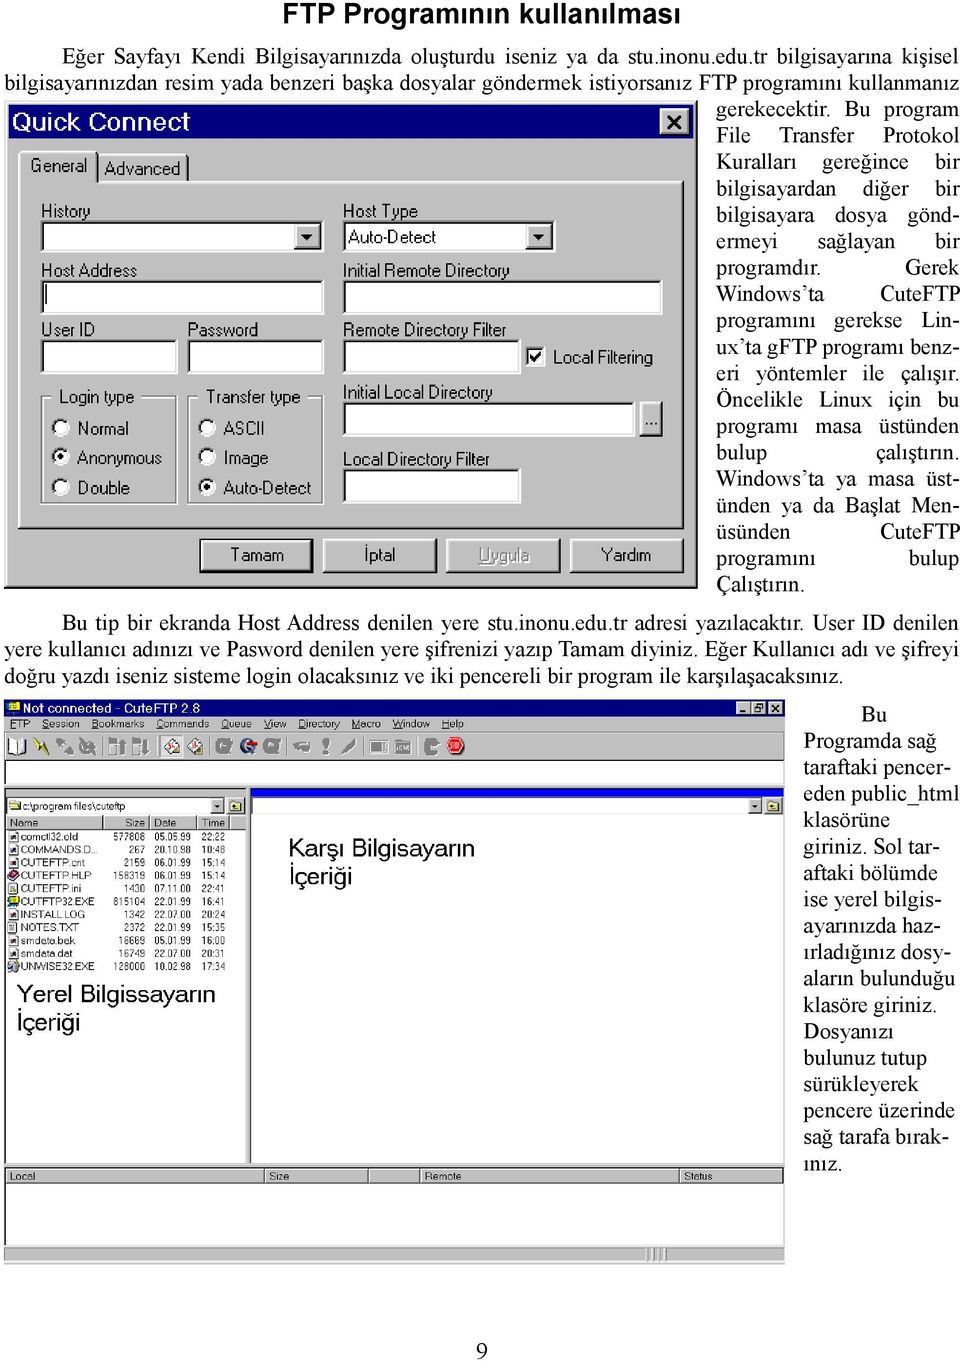 Bu program File Transfer Protokol Kuralları gereğince bir bilgisayardan diğer bir bilgisayara dosya göndermeyi sağlayan bir programdır.